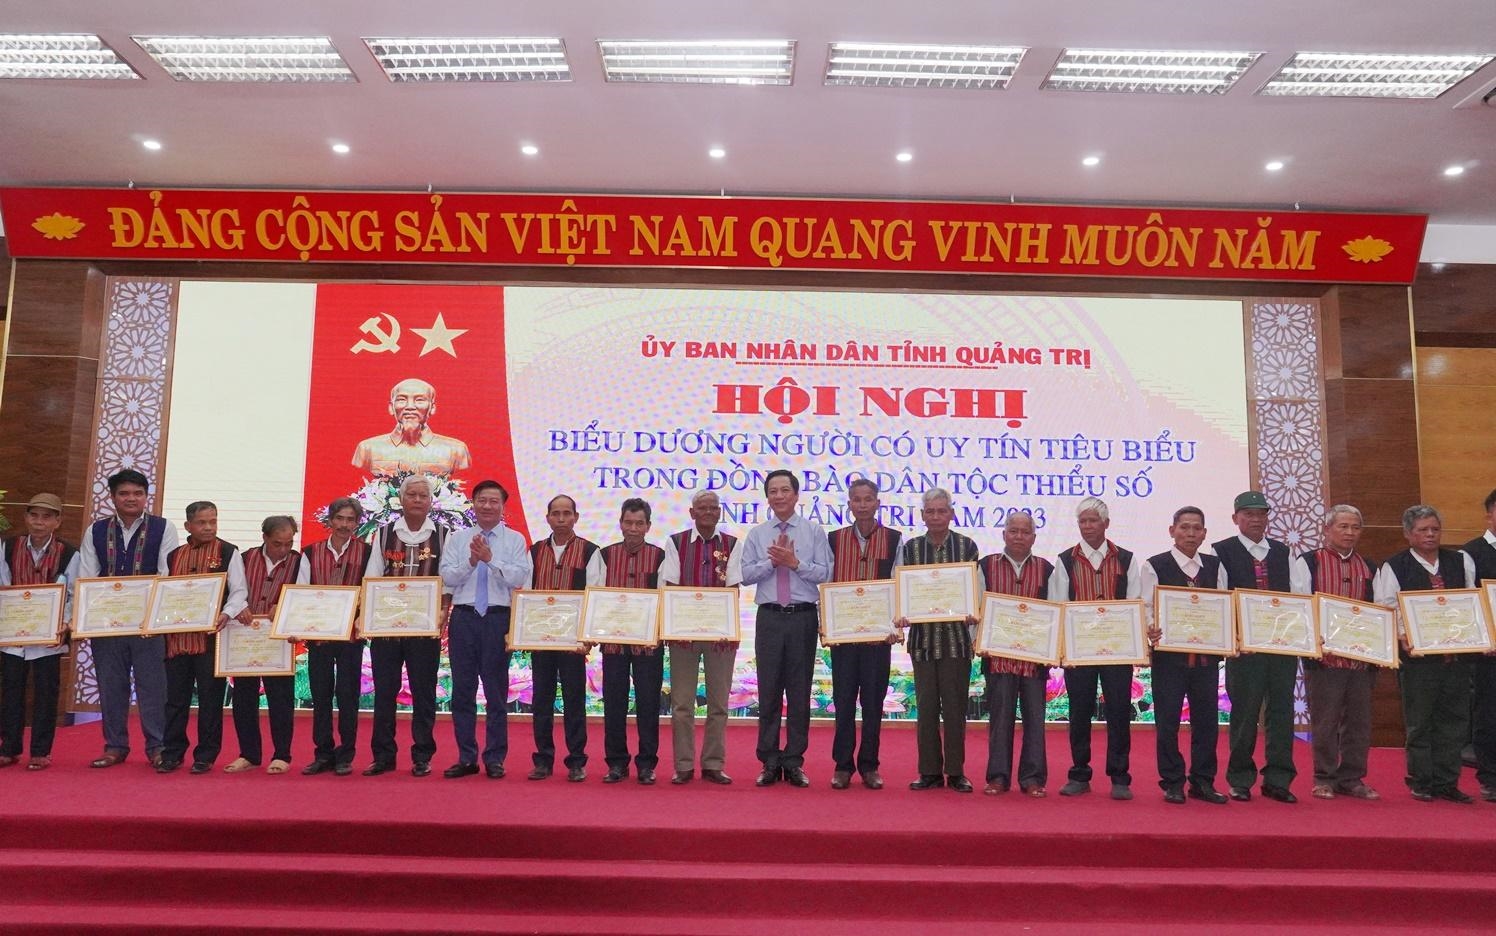 Toàn tỉnh Quảng Trị hiện có 191 Người có uy tín trong đồng bào các DTTS